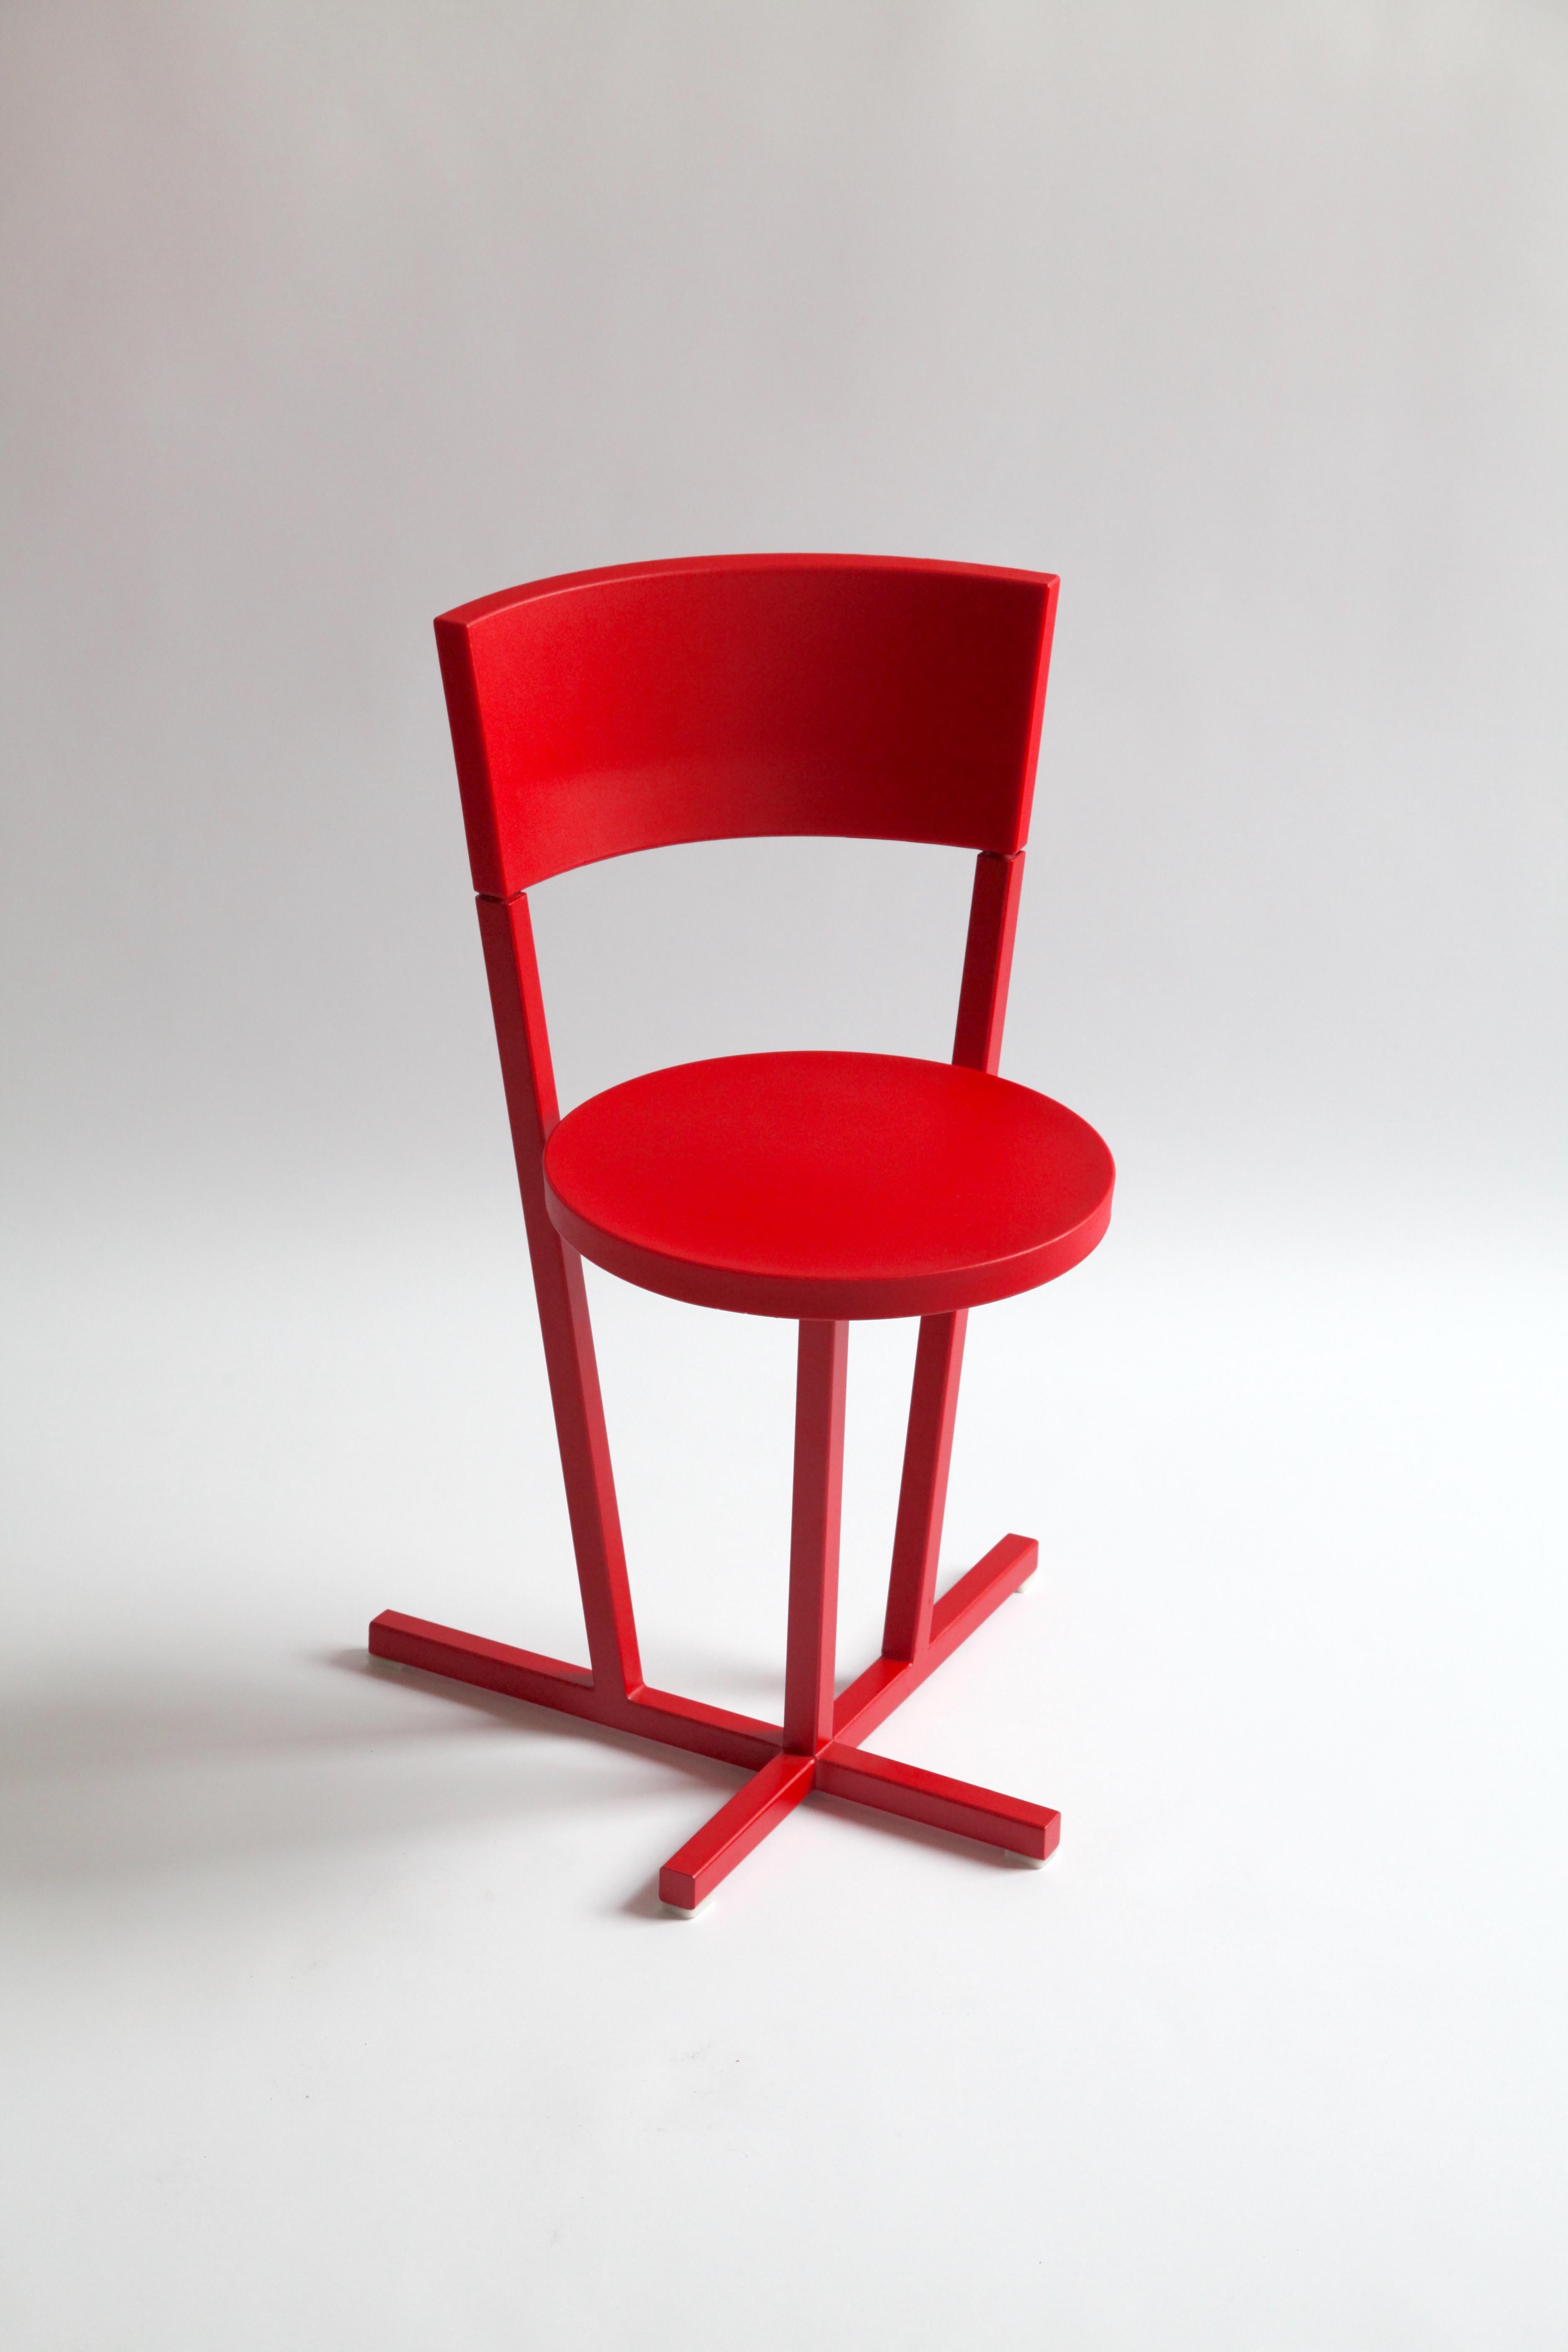 Ce prototype de chaise Stedelijk a été conçu pour le musée Stedelijk d'Amsterdam. 

La chaise n'est pas produite en raison d'un changement de directeur au Stedelijk Museum.
Quelques prototypes ont été réalisés et l'un d'eux se trouve dans la